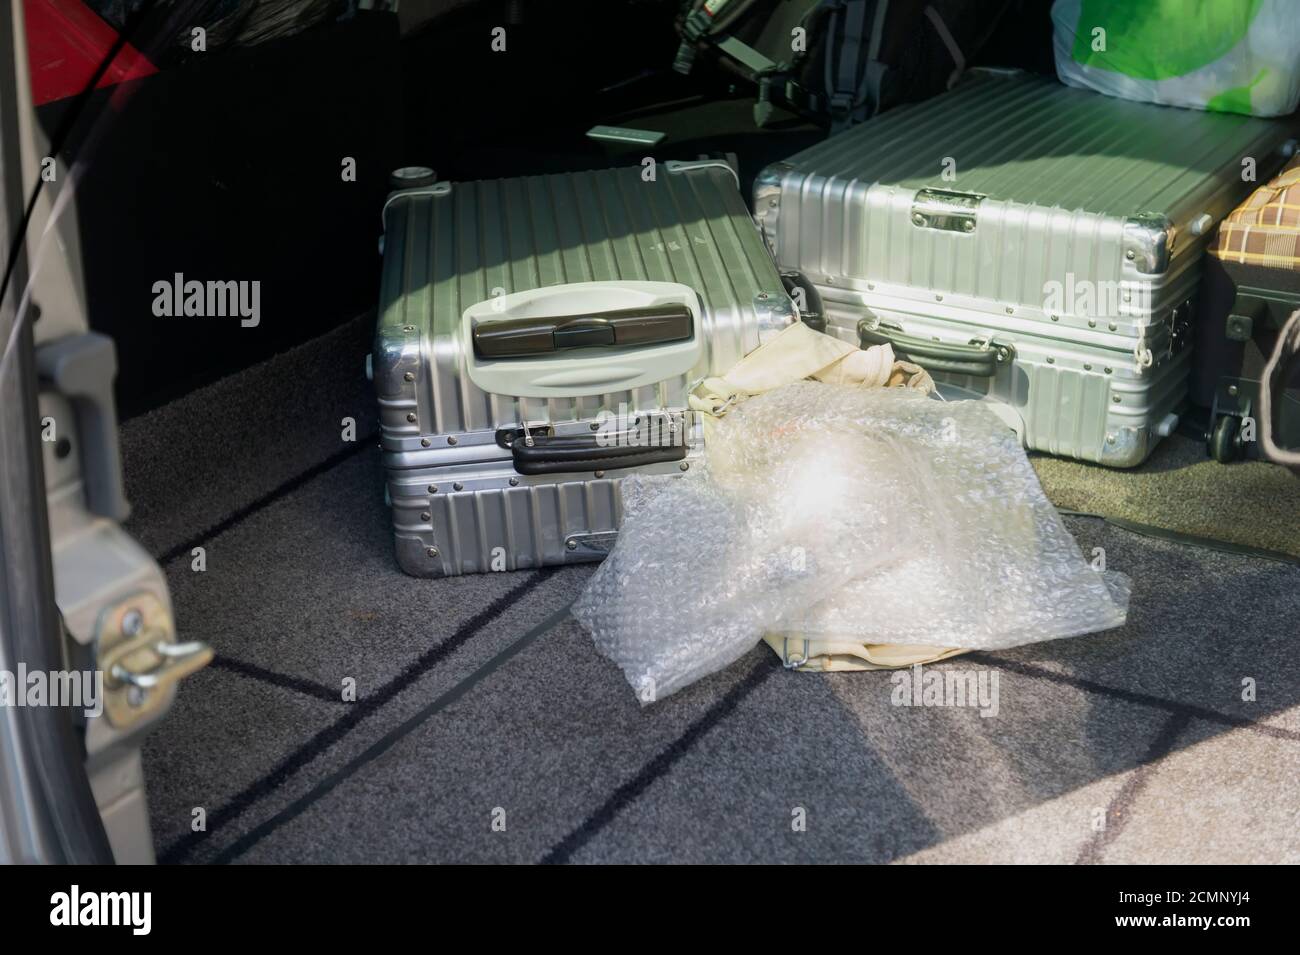 Un bagage est déposé sur le plancher du coffre d'une voiture Banque D'Images